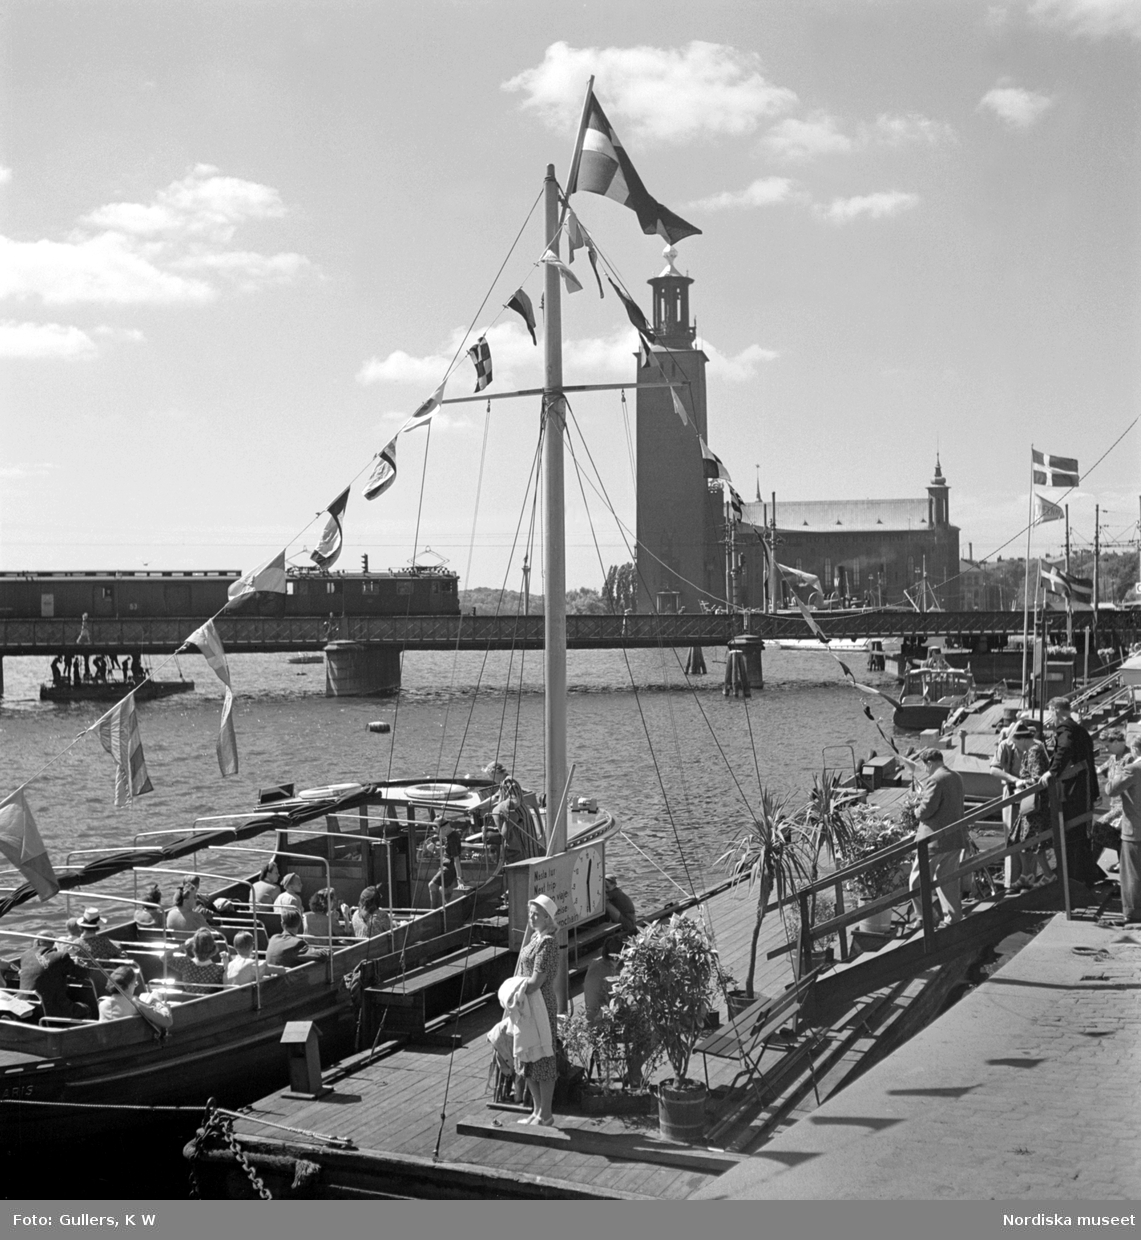 Stockholm. Turistbåtar vid Tegelbacken, Norra järnvägsbron och Stadshuset i bakgrunden.